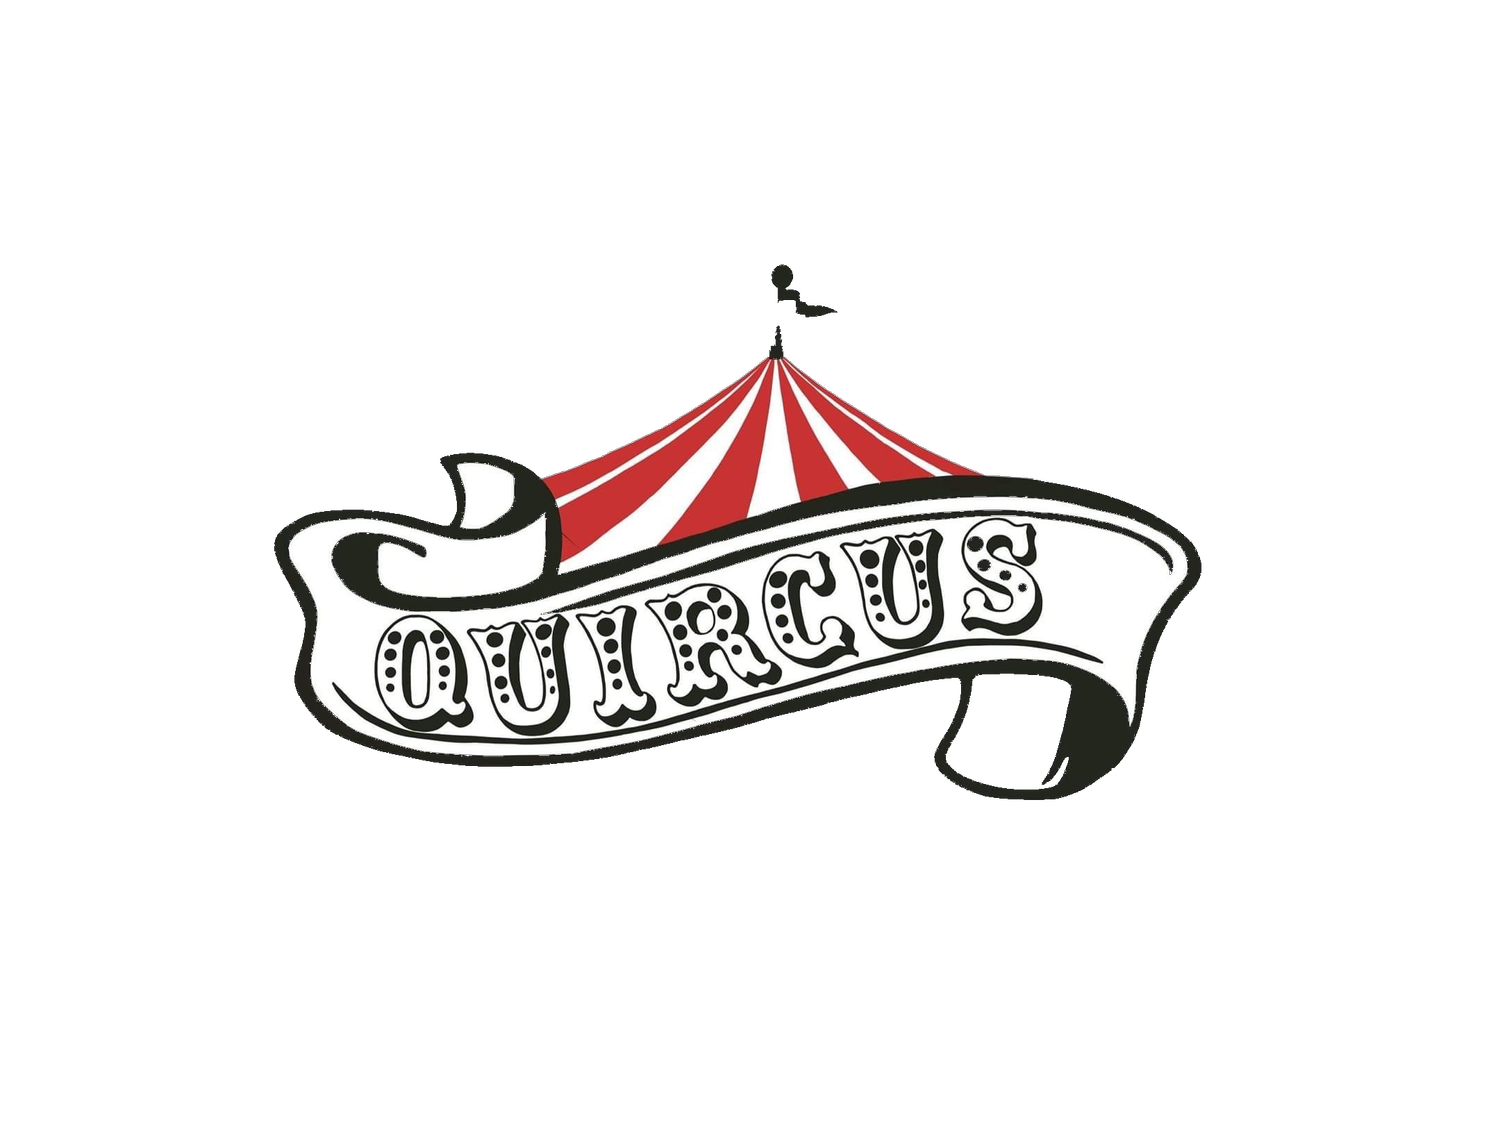 Quircus